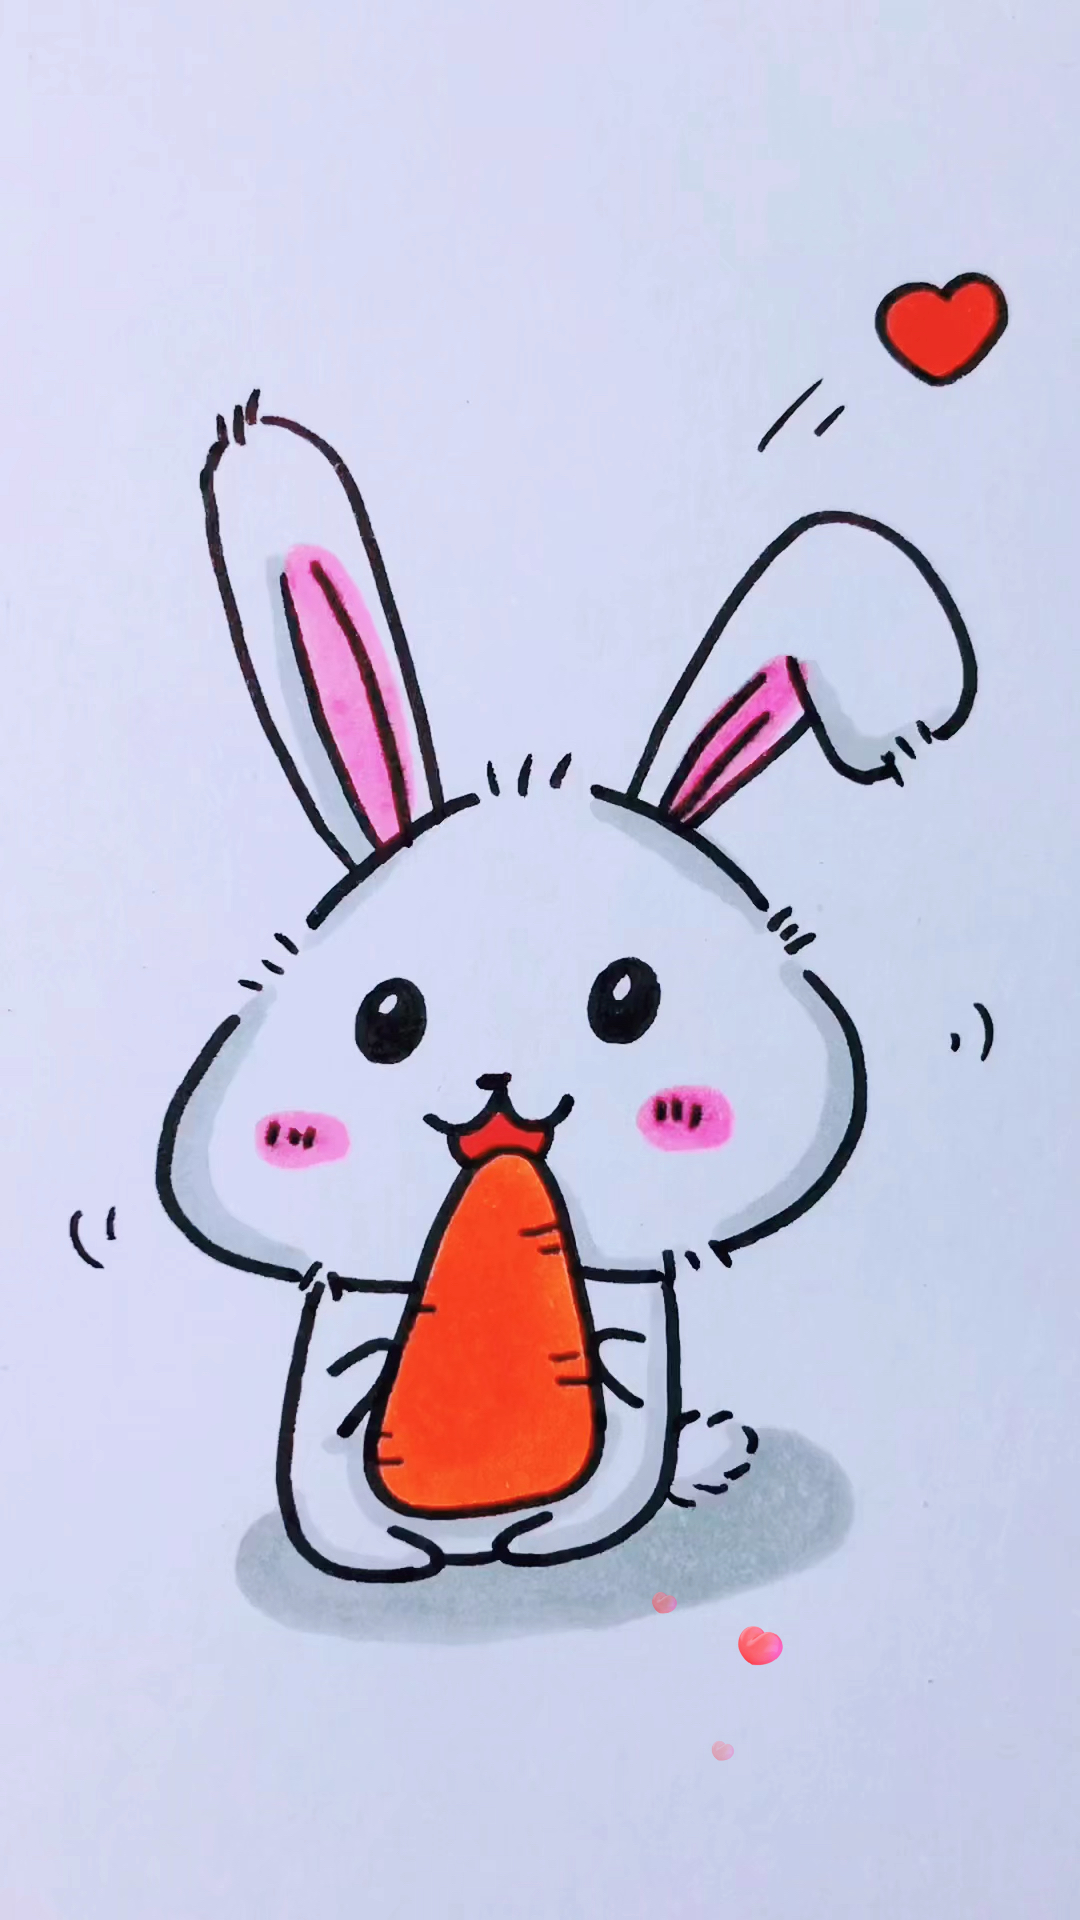 画一只小兔子萌萌图片